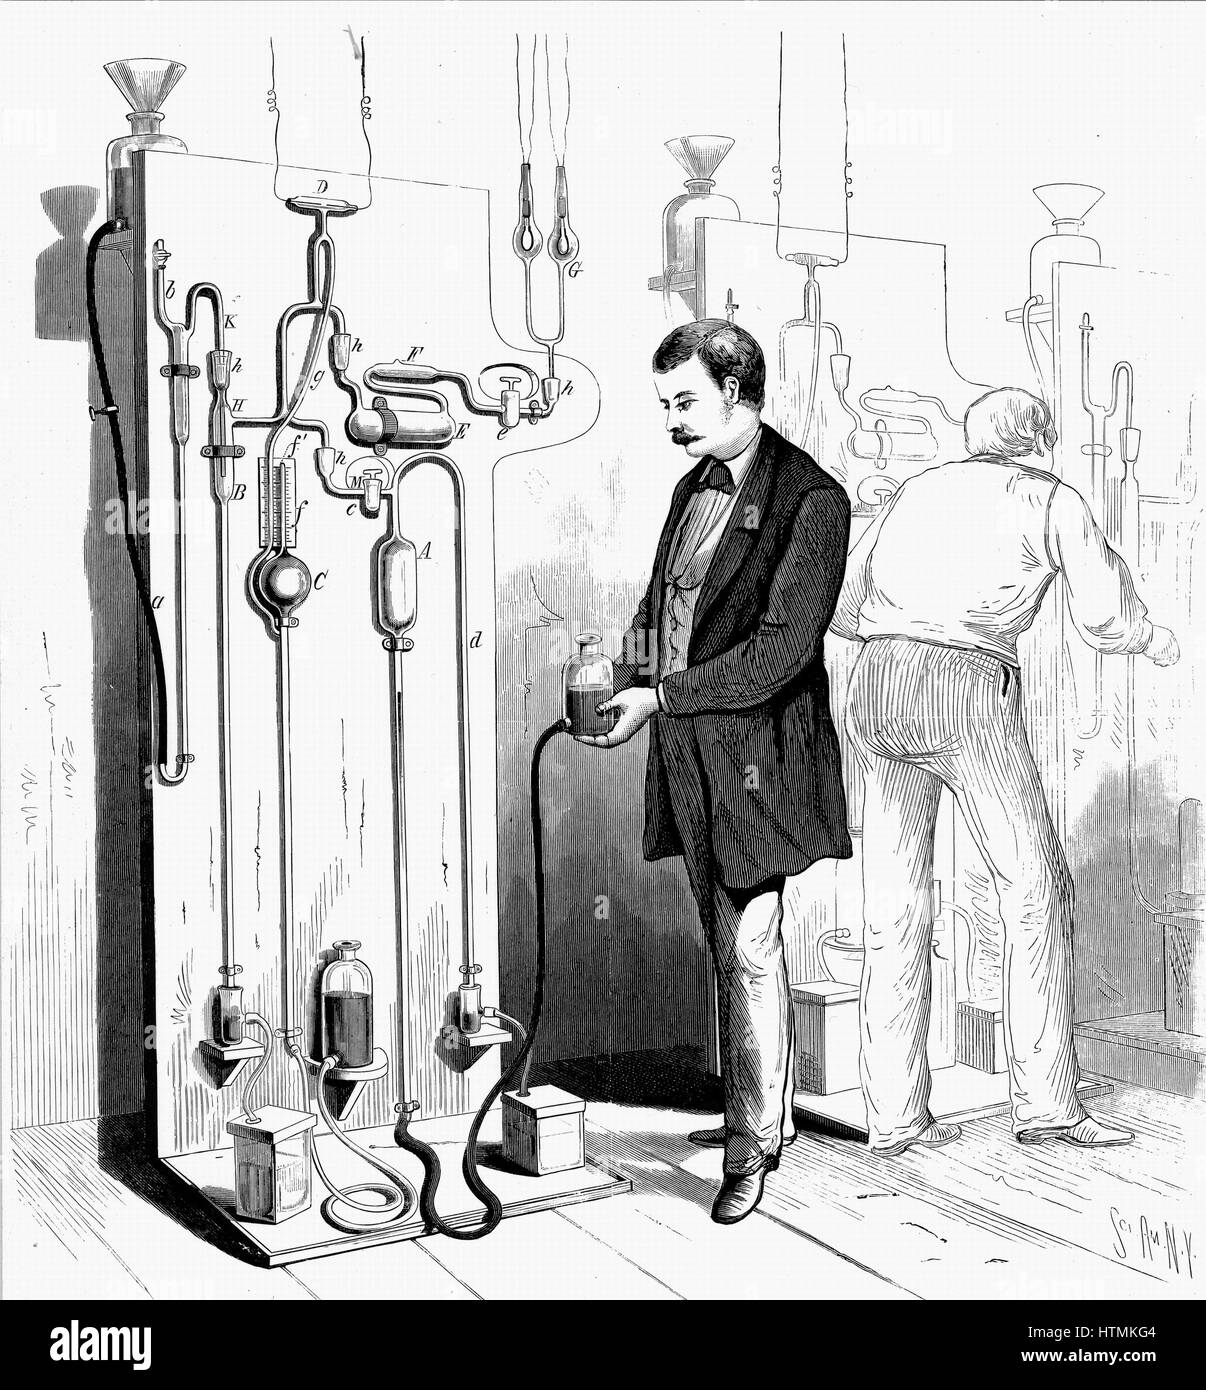 El aparato utilizado en el escape de vacío bombillas de luz incandescente de Edison en G (centro superior). De Scientific American, Nueva York, 1880. Grabado Foto de stock